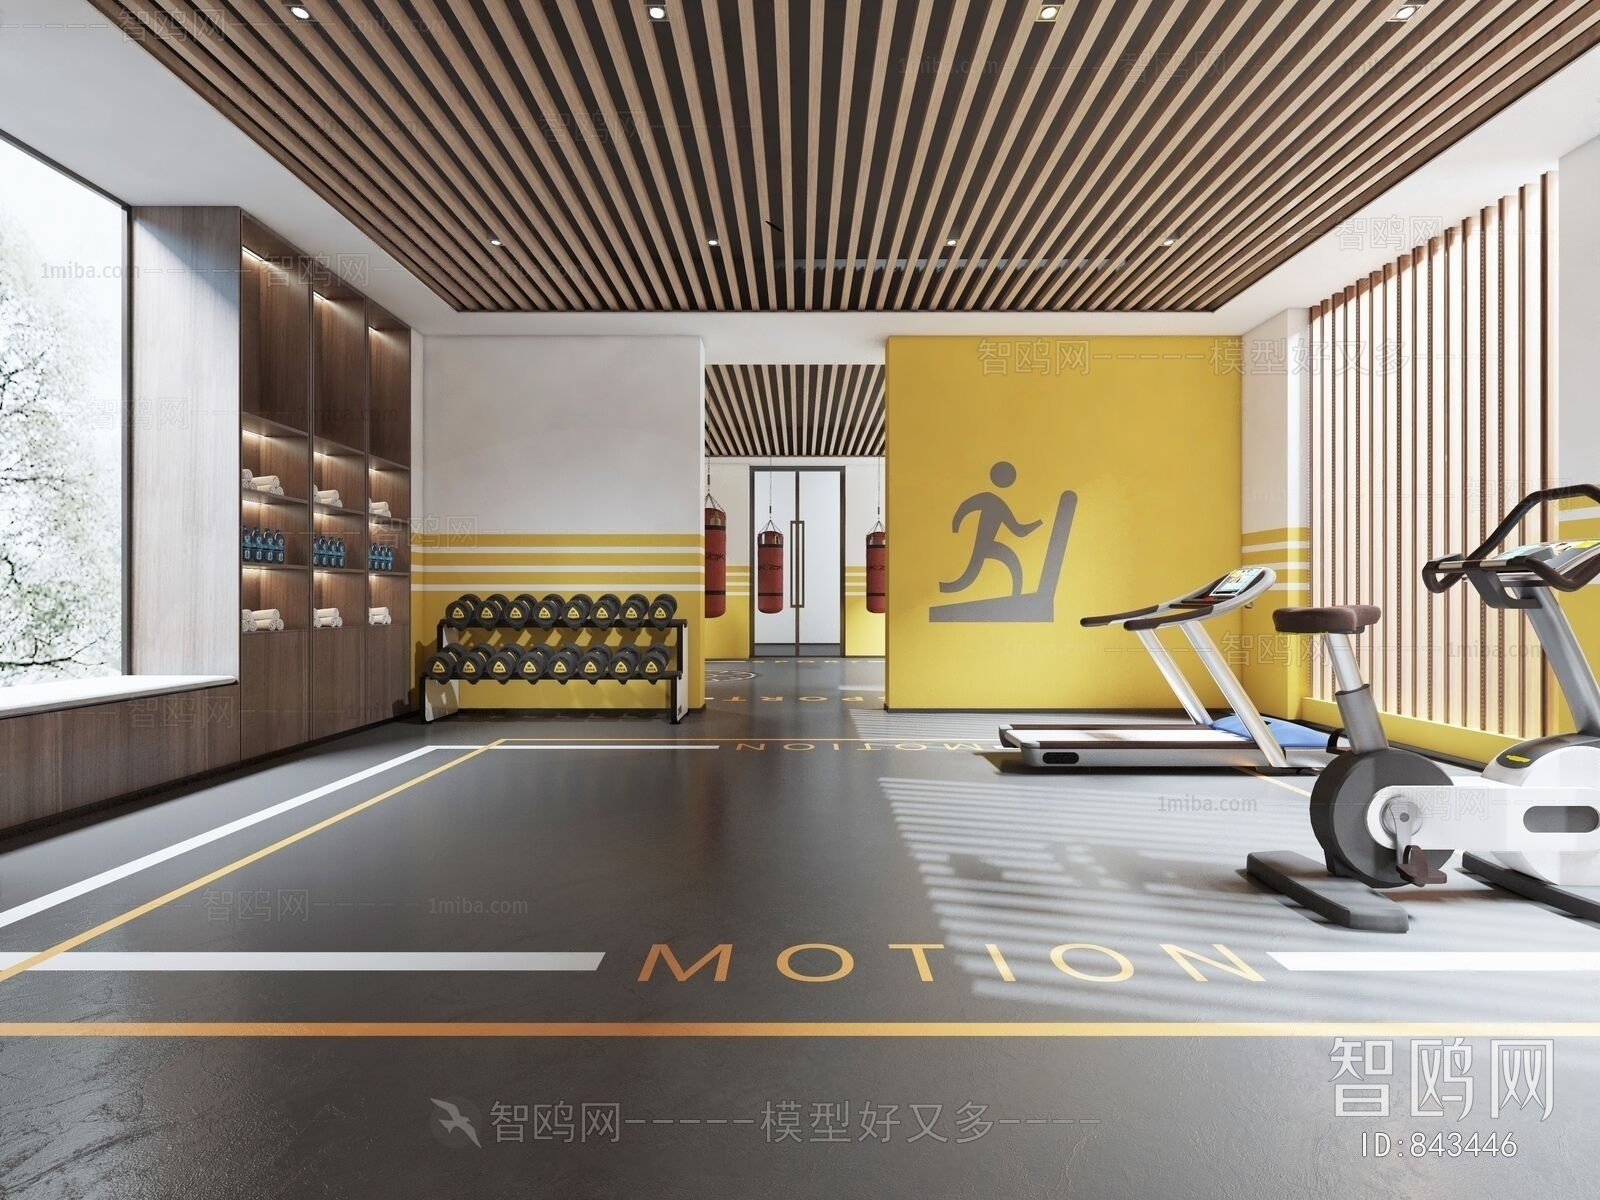 Modern Gym